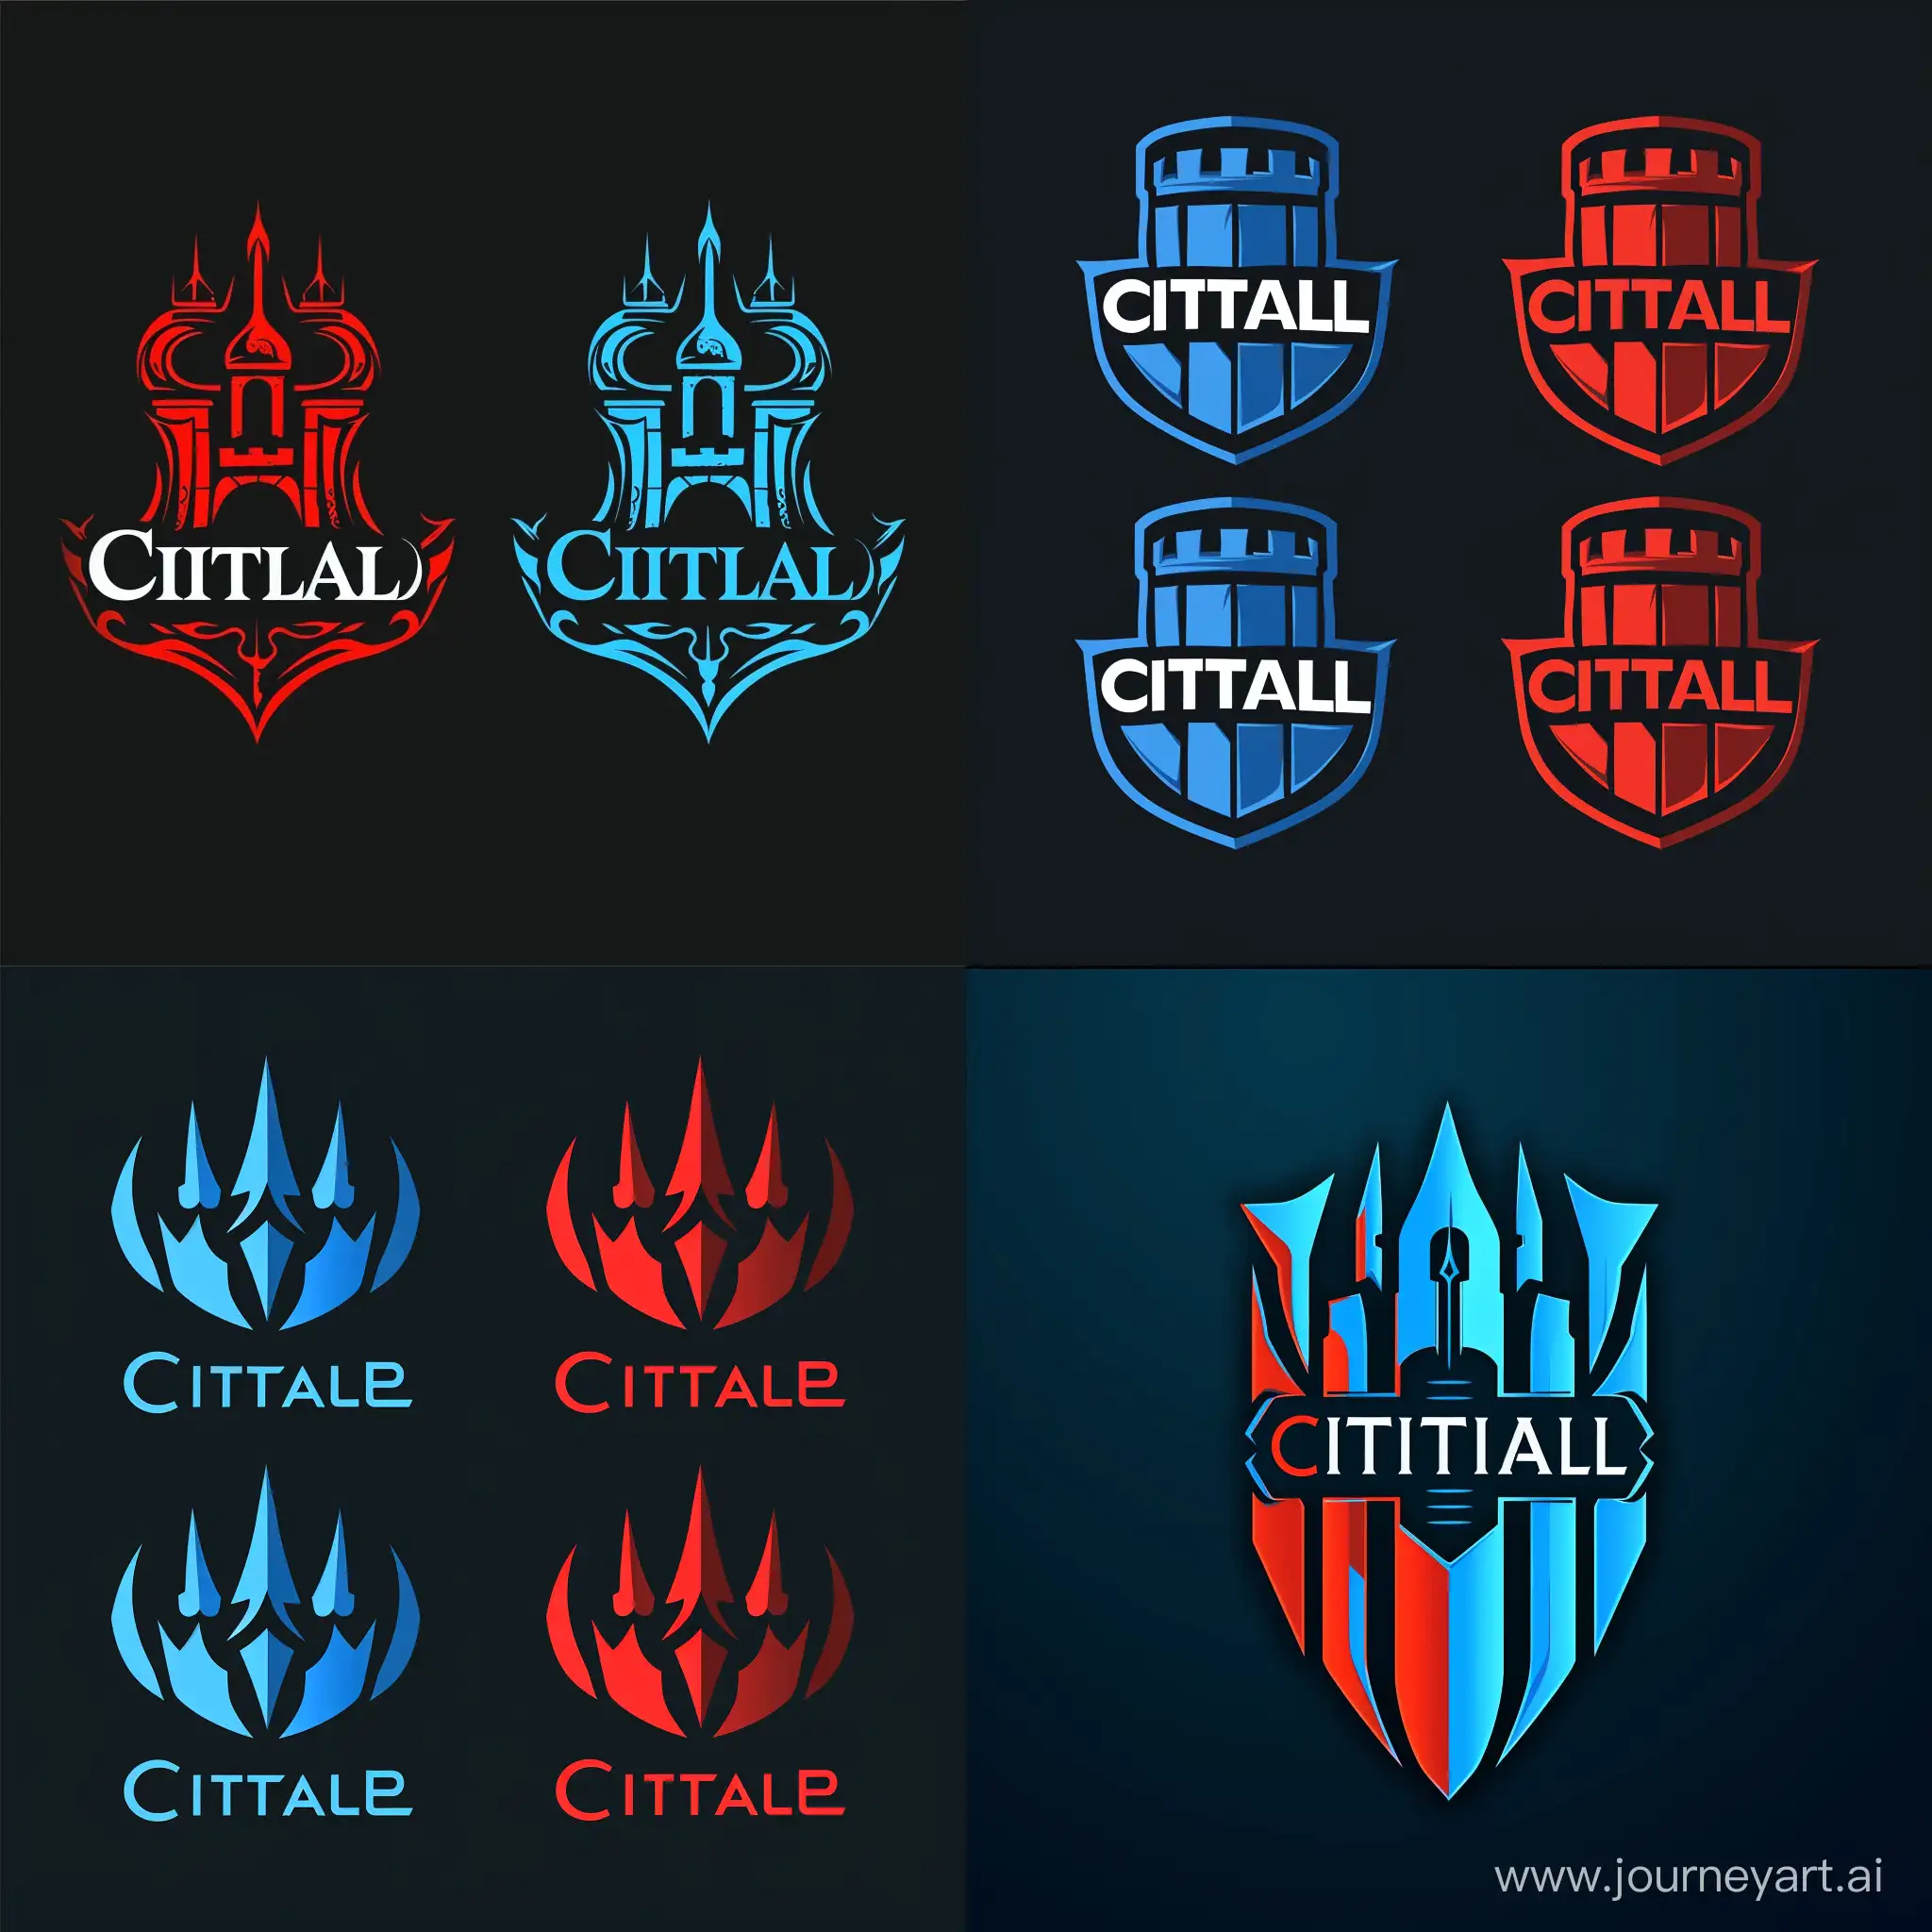 Citadel-Logo-Variants-Emblem-Designs-for-Information-Protection